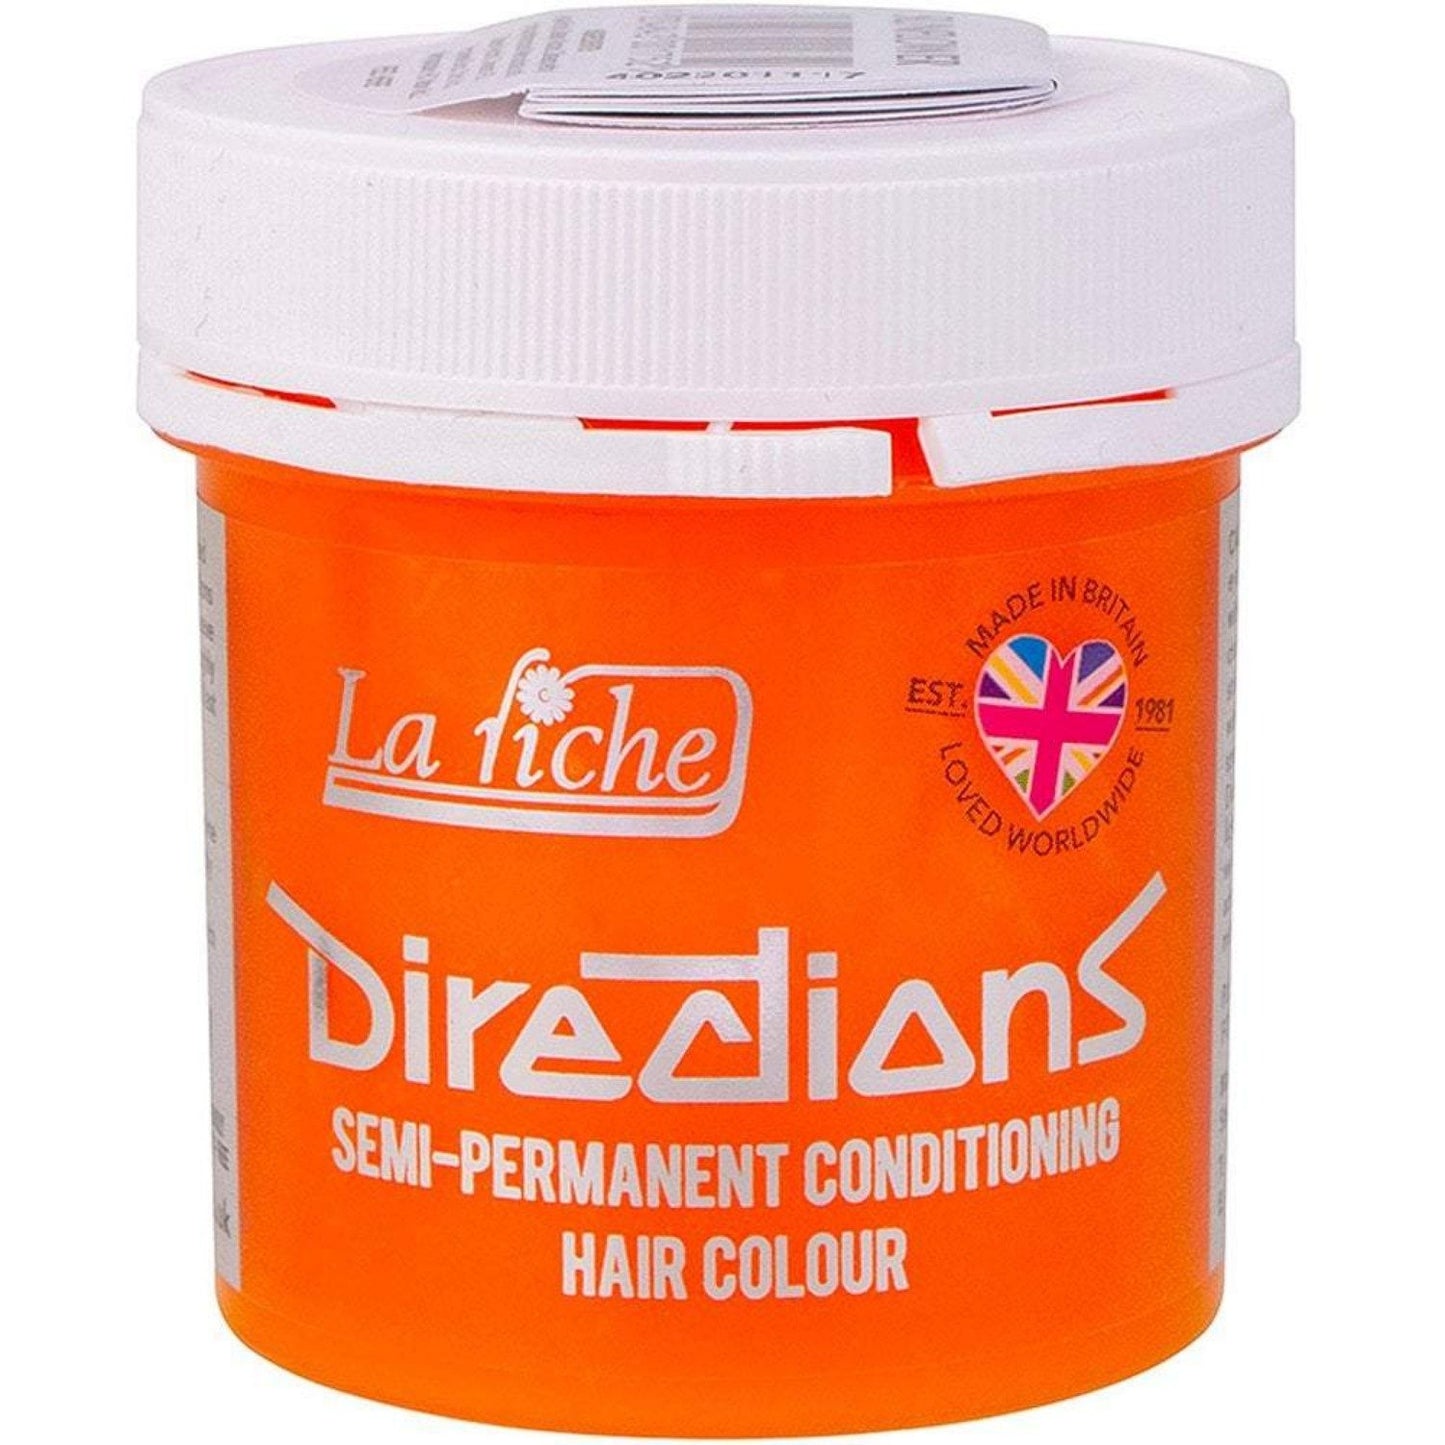 La Riche Directions Vegan Semi Permanent Hair Colour - 100ml - Sunflower (SHOP)